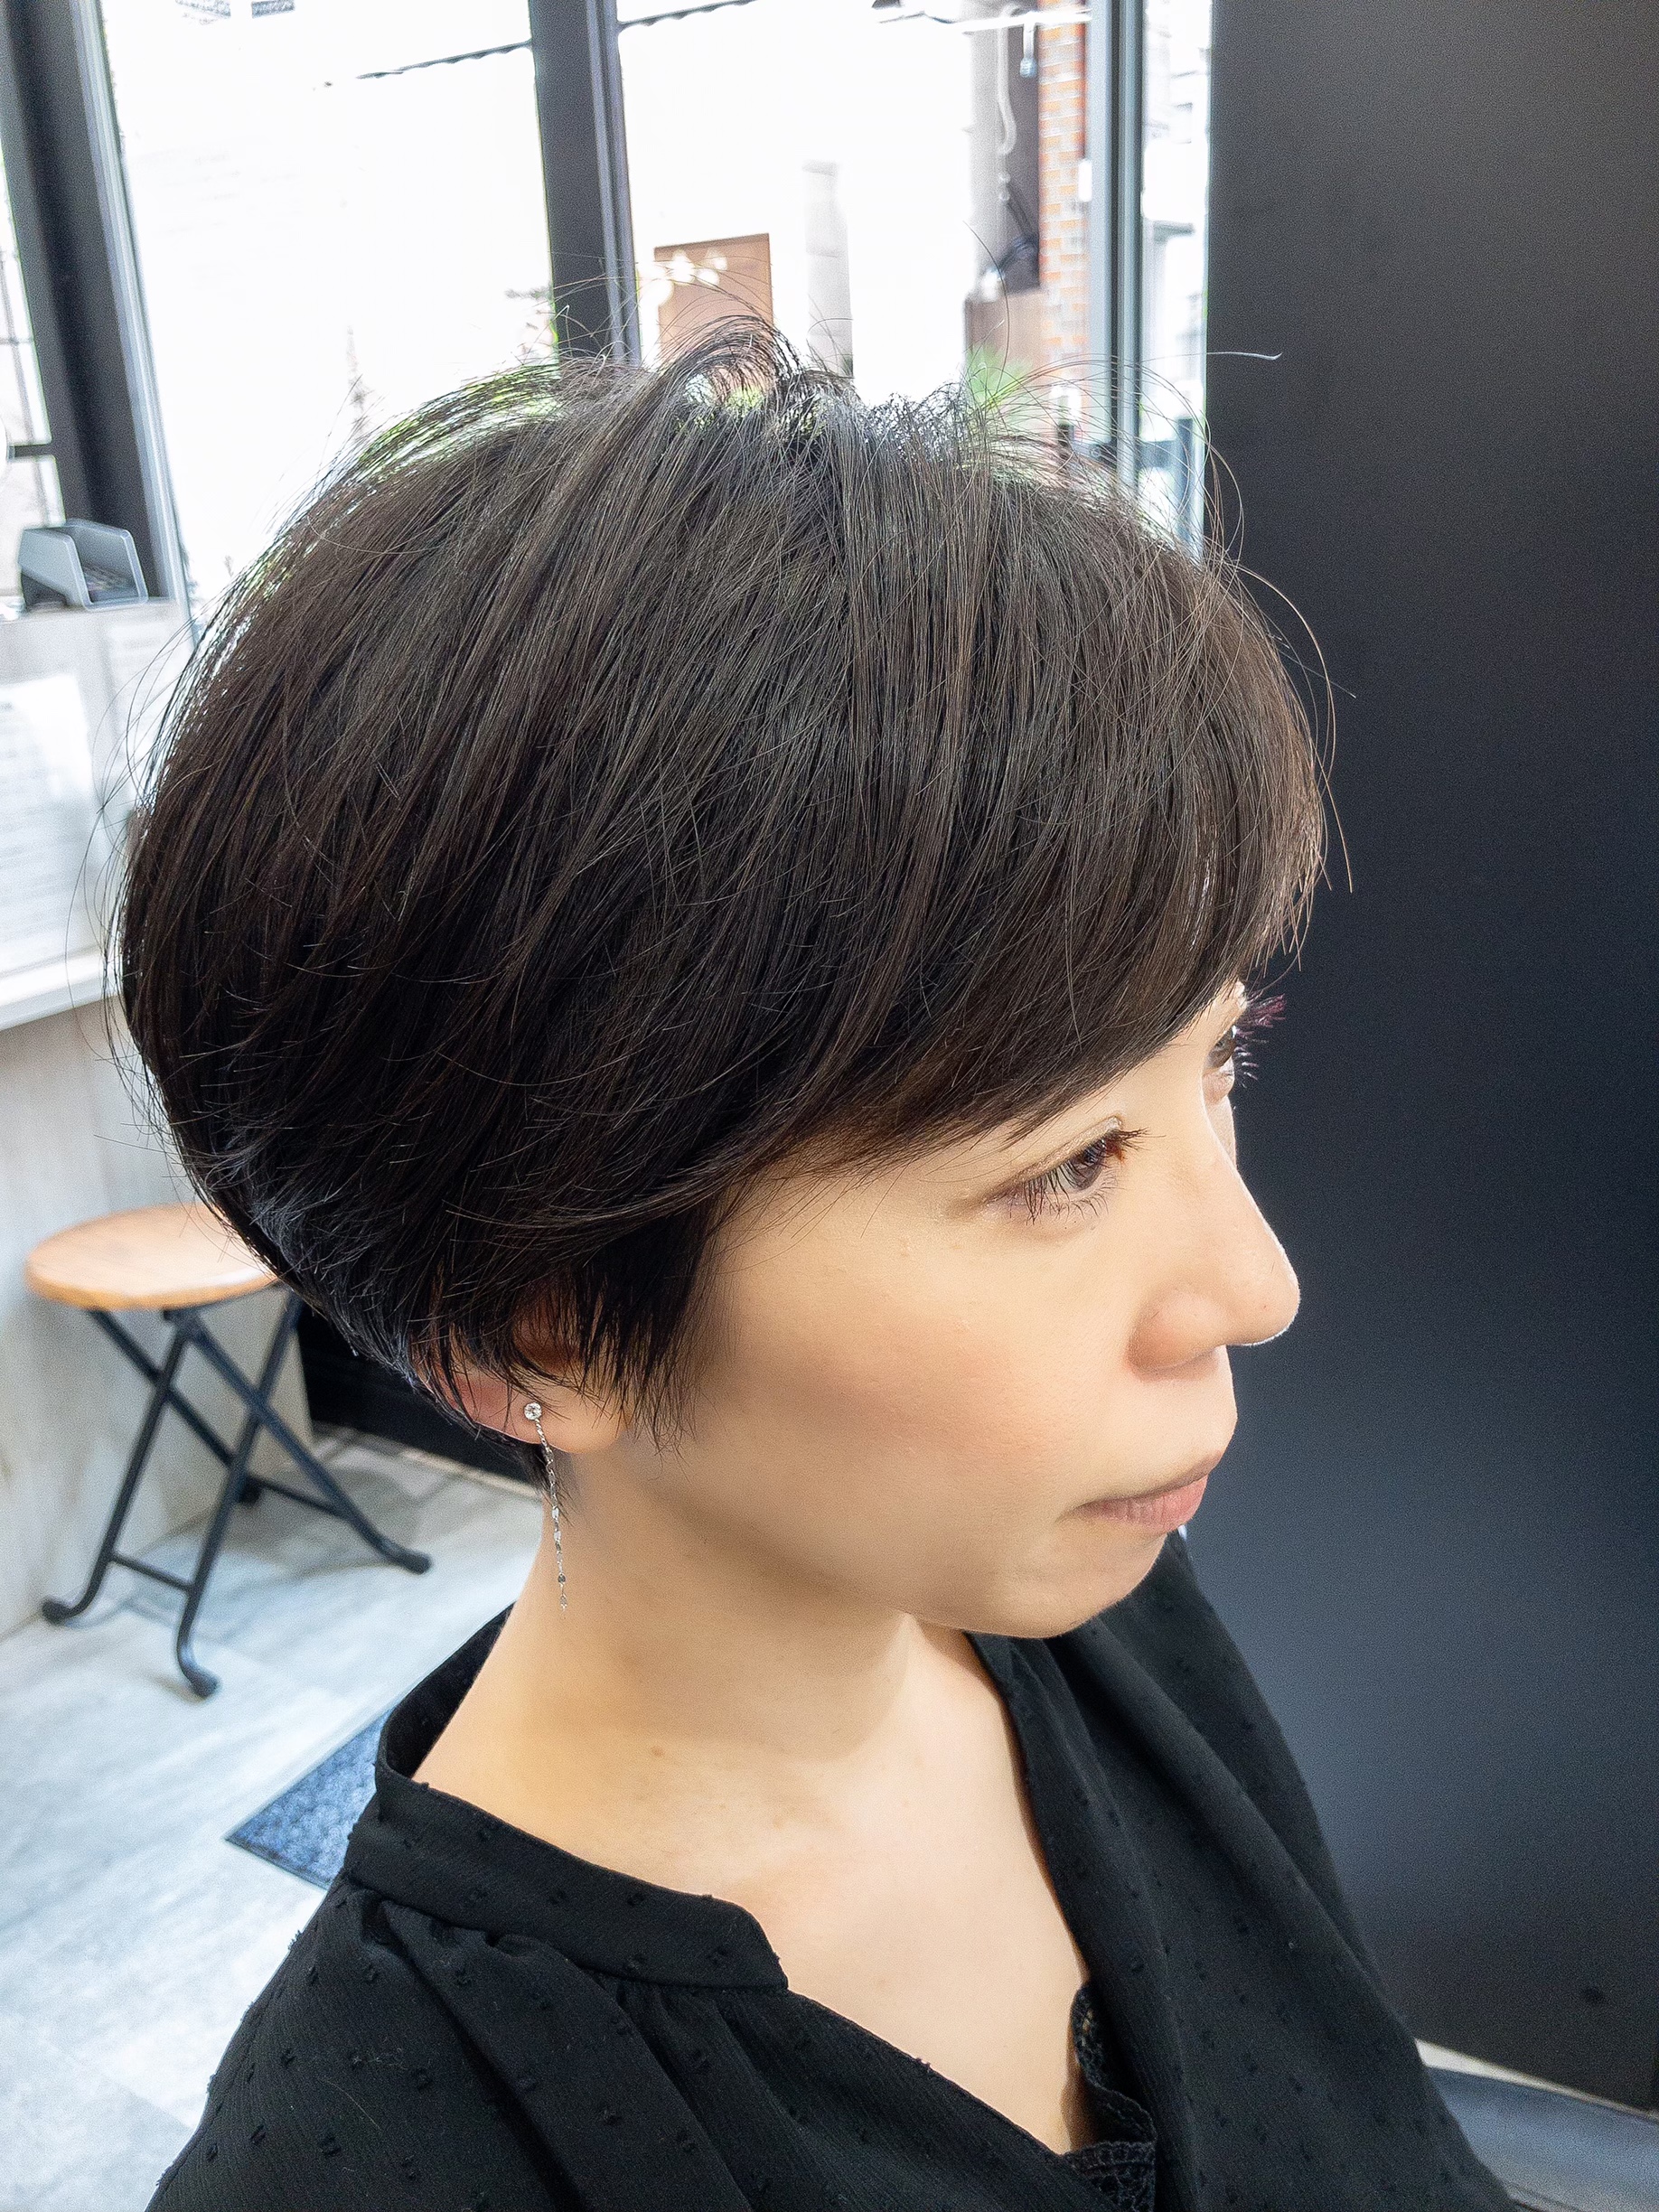 サイドの毛が膨らむショートヘアに2WAYなお勧めショートスタイル 阿佐ヶ谷でショートヘアに特化した美容師 石井さんのショートヘアページ